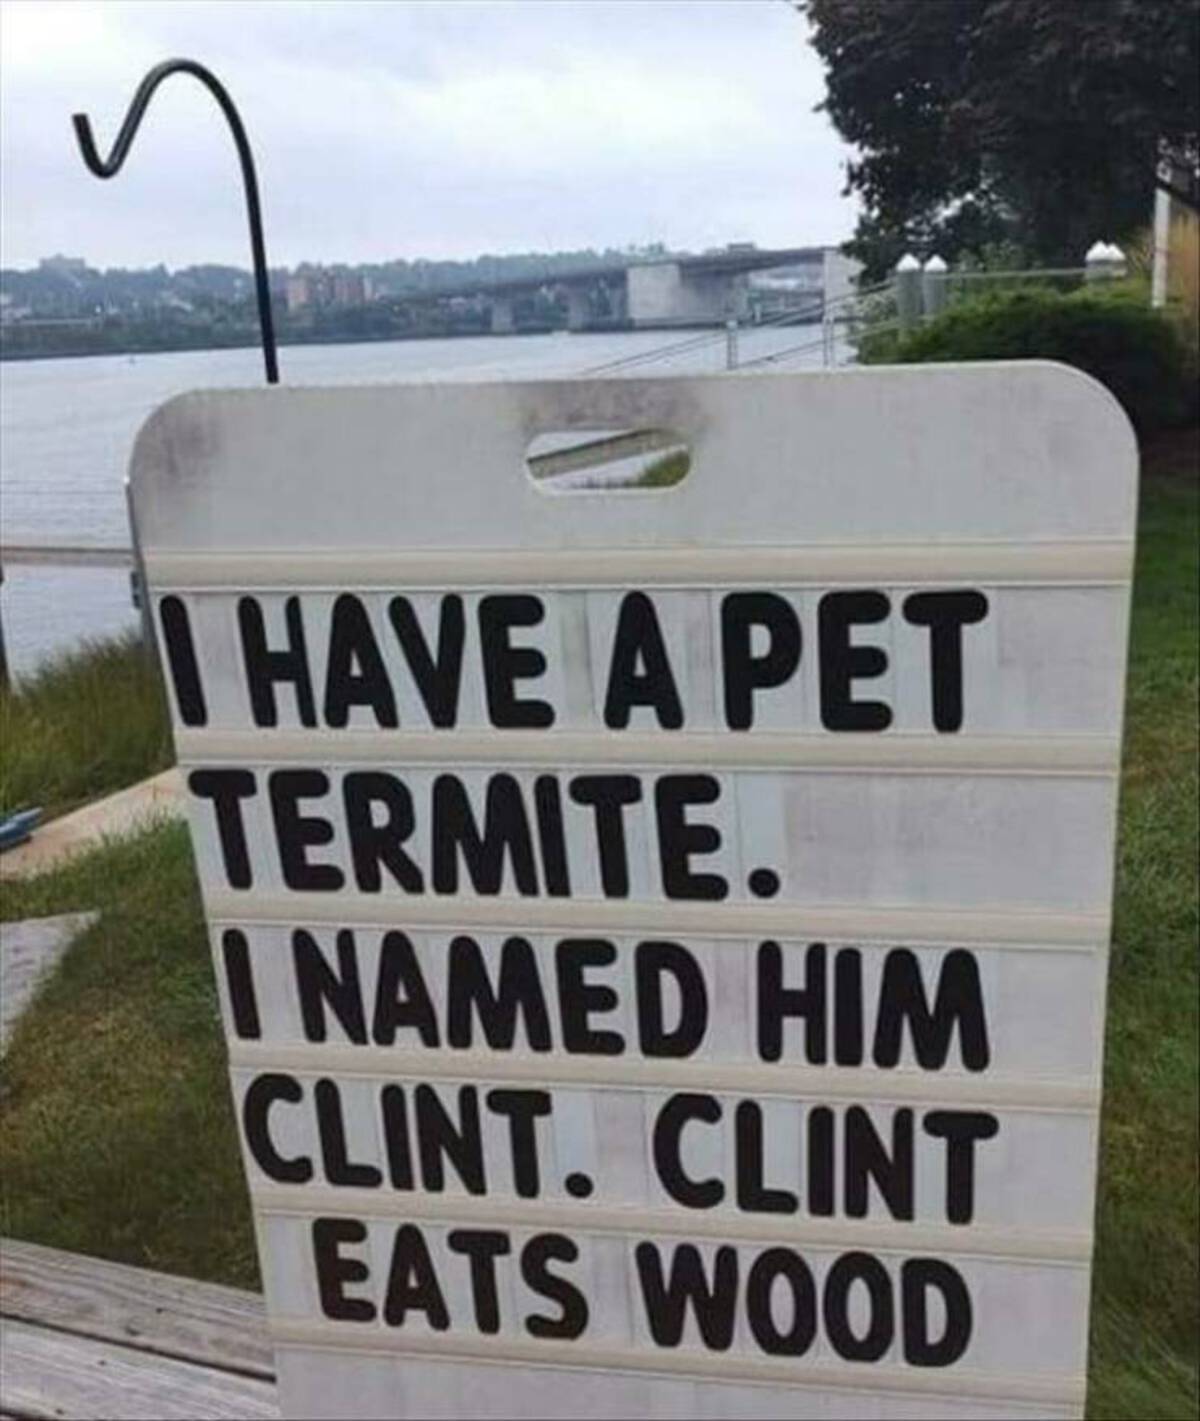 termite clint eats wood - I Have A Pet Termite. I Named Him Clint. Clint Eats Wood